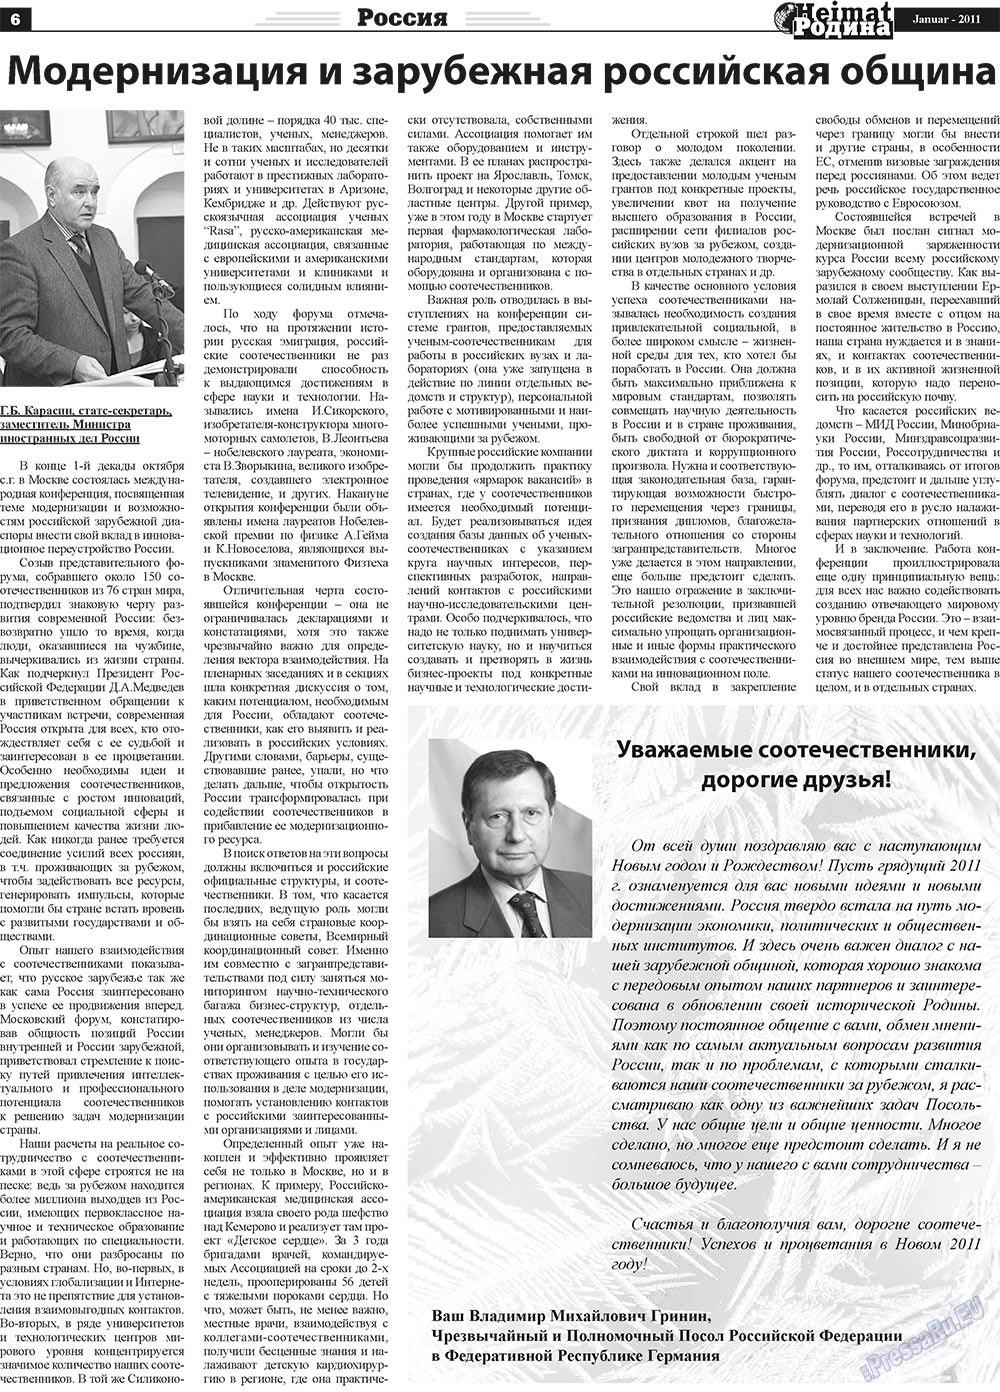 Heimat-Родина (газета). 2011 год, номер 1, стр. 6